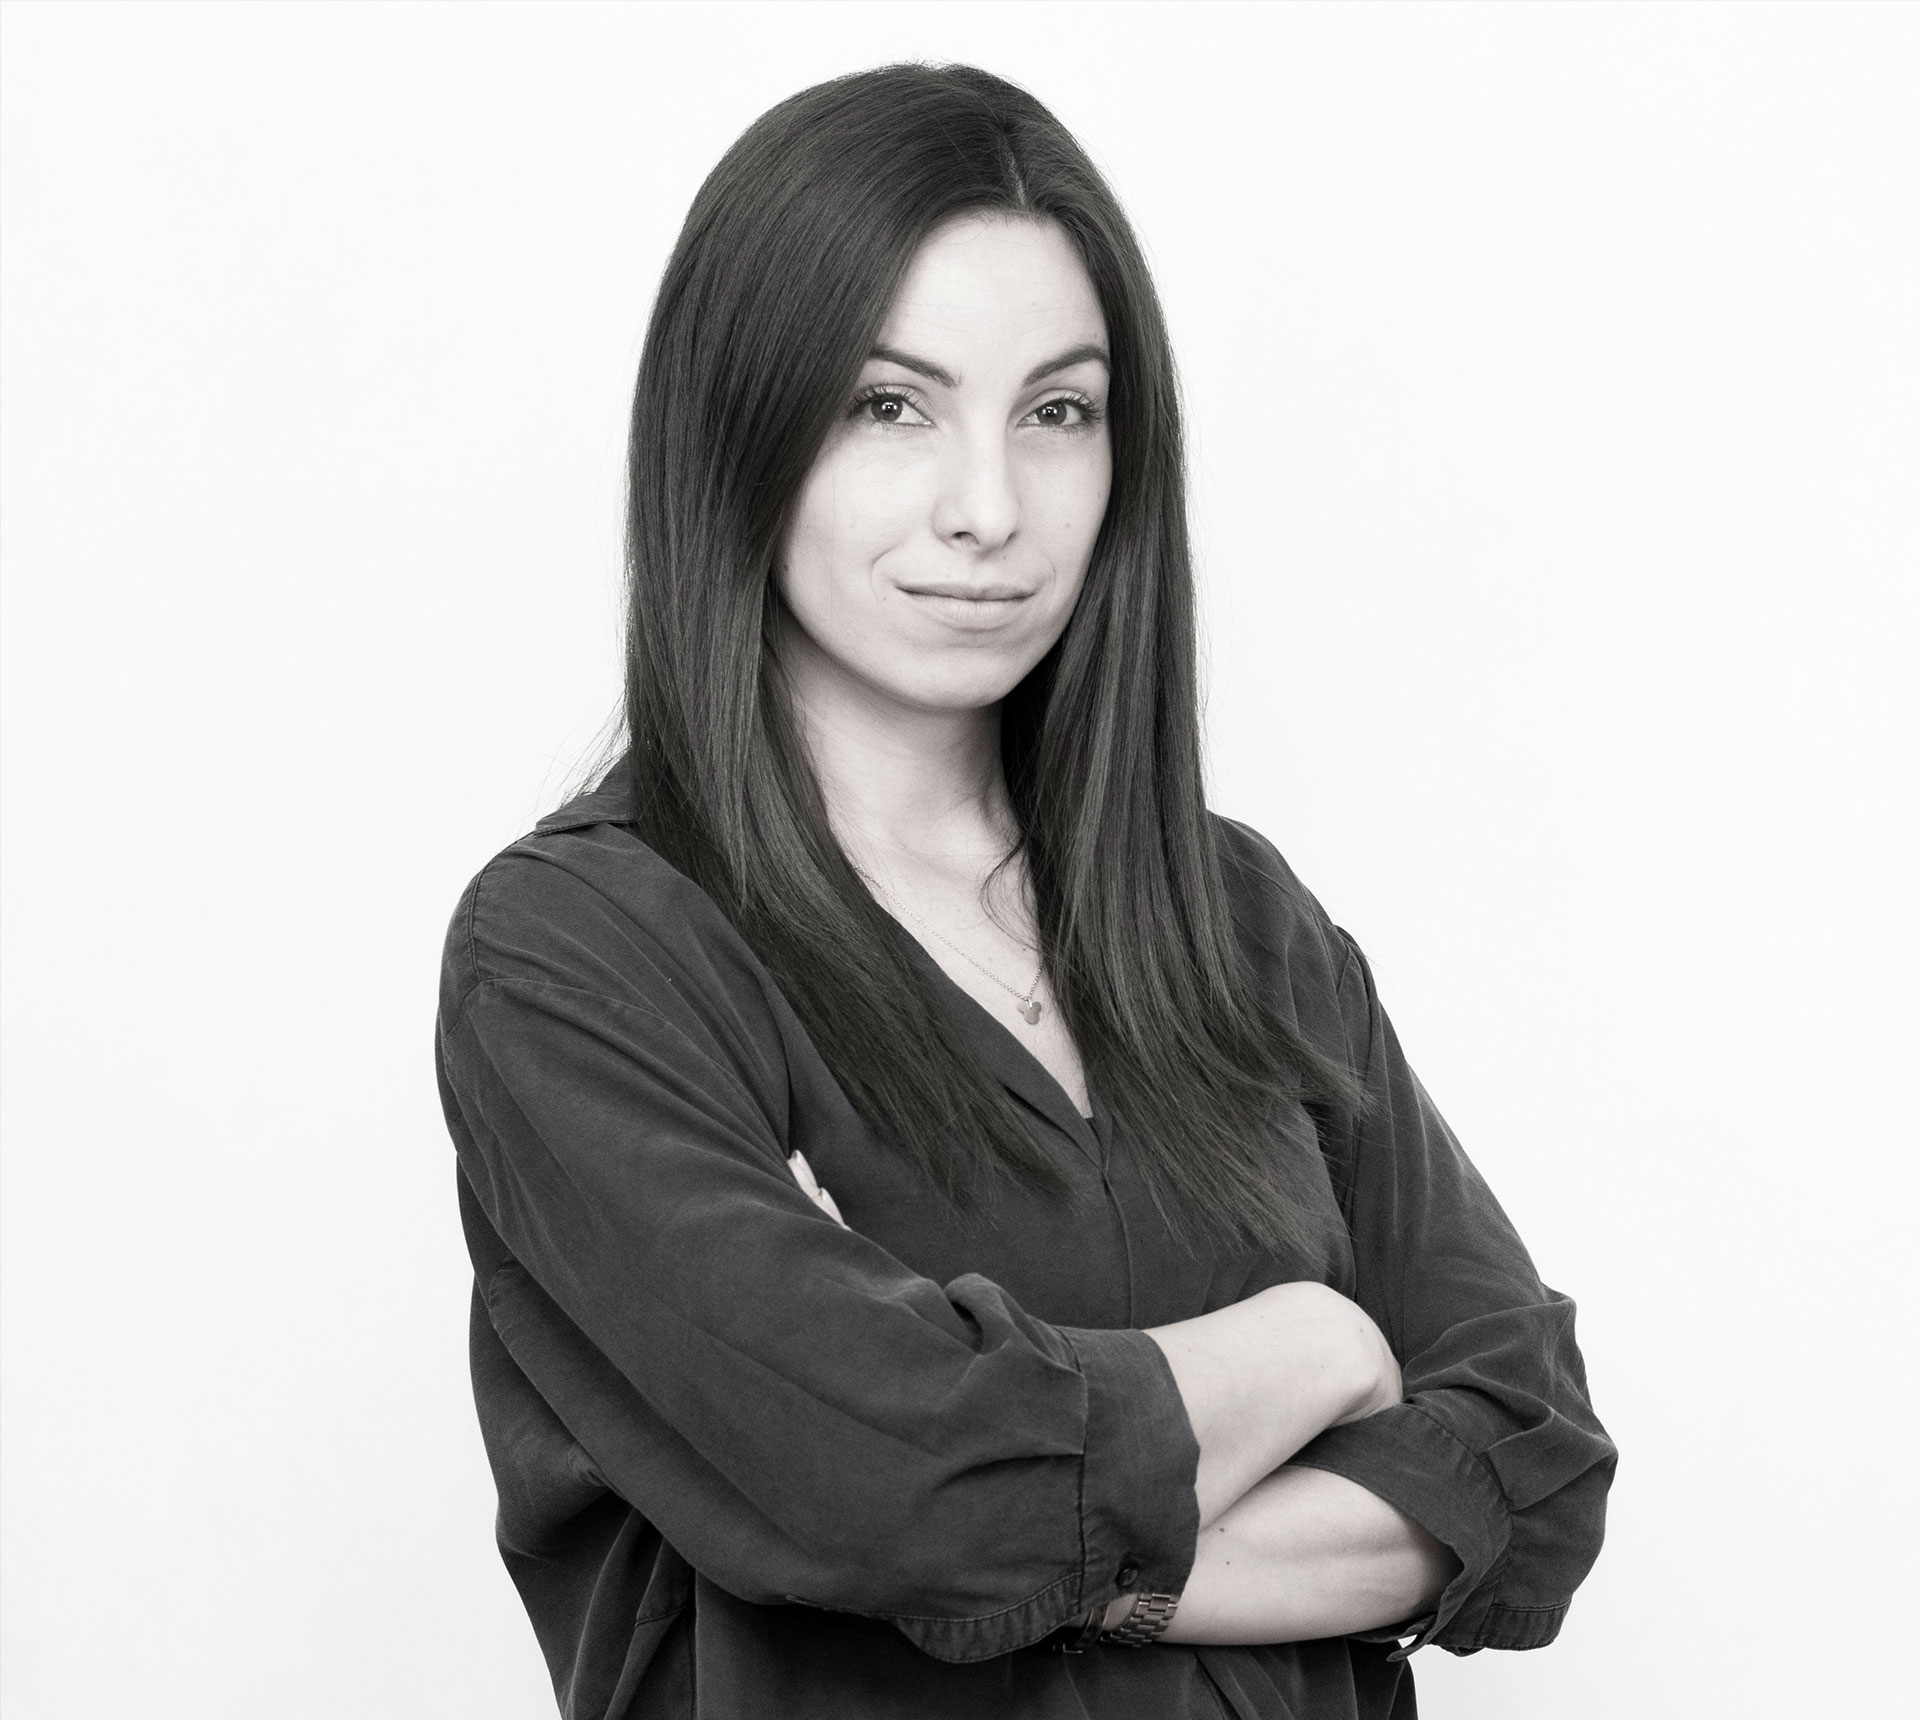 Krisztina Giczi Hidvéginé Communication project manager 